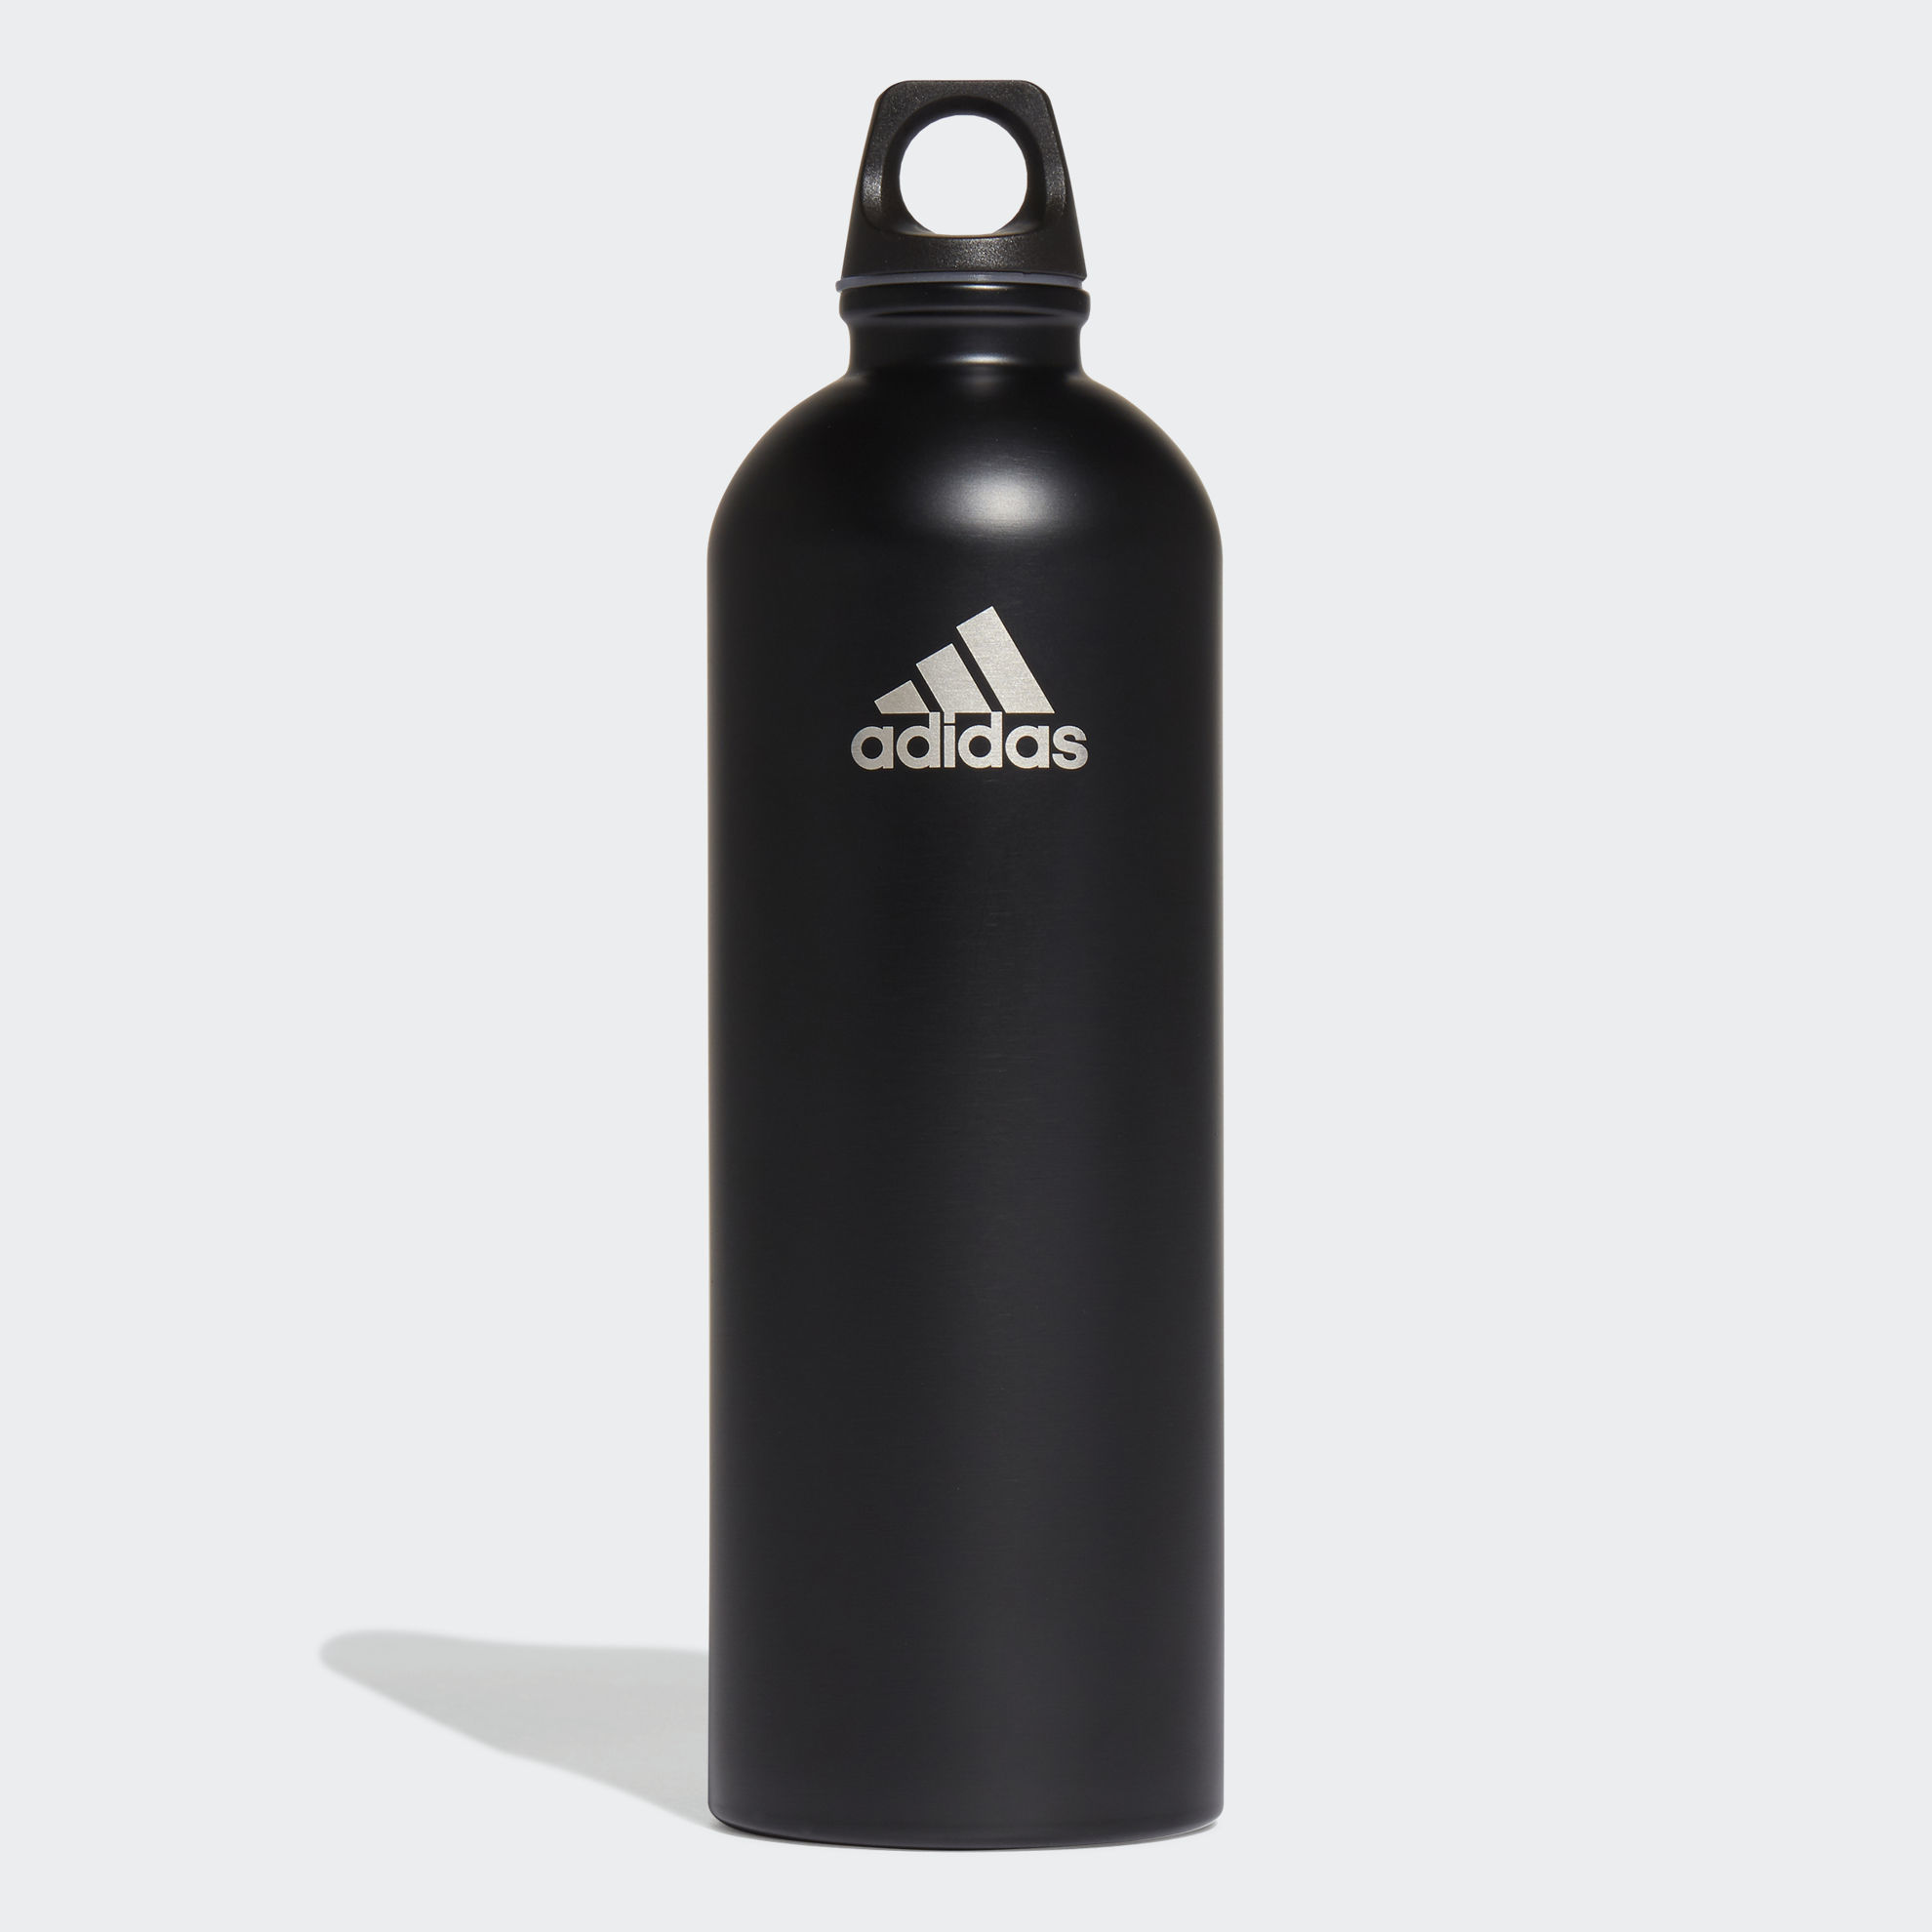 adidas Steel Water Bottle .75 L 